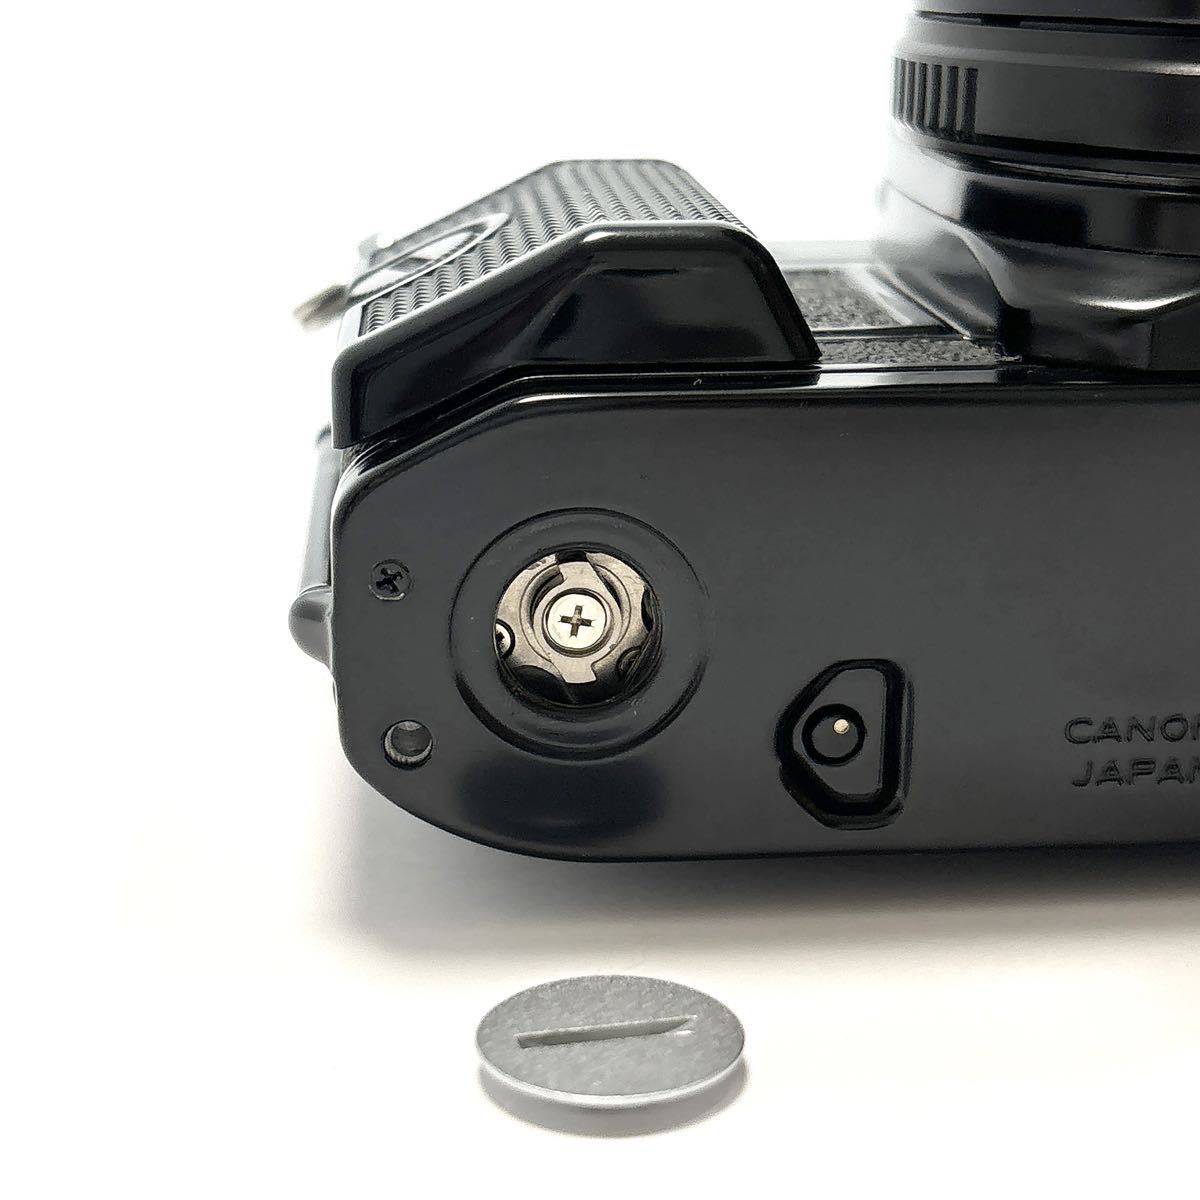 Canon キャノン AE-1 PROGRAM ブラックボディ SIGMA ZOOM-MASTER 1:2.8-4 35-70mm レンズ セット 一眼レフカメラ alp川0207_画像6